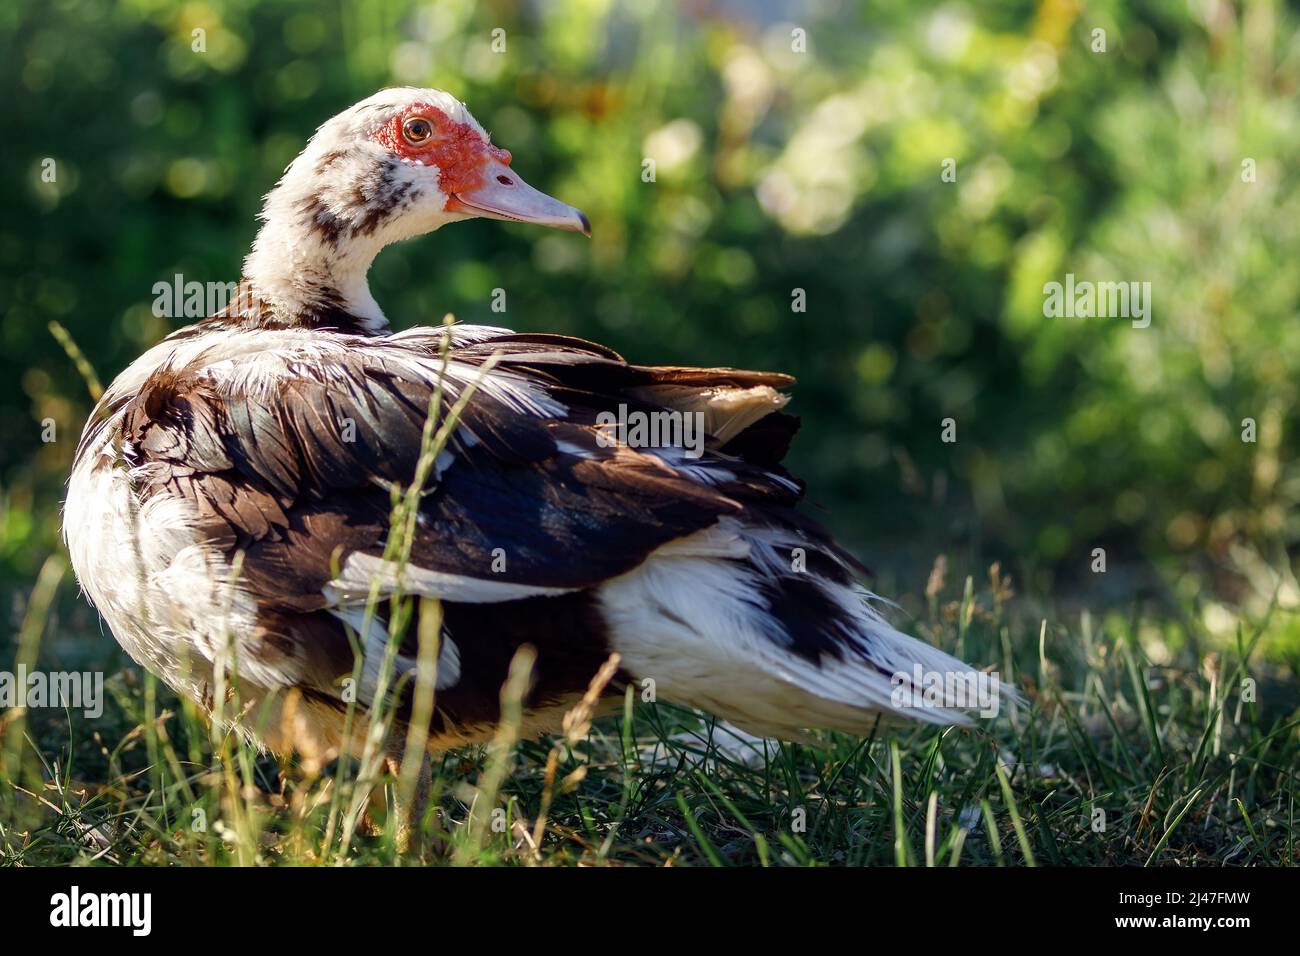 La femelle de canard brun avec une tache rouge bosselée de chair par ses yeux et le bec est debout sur l'herbe verte avec des arbustes flous en arrière-plan. Banque D'Images